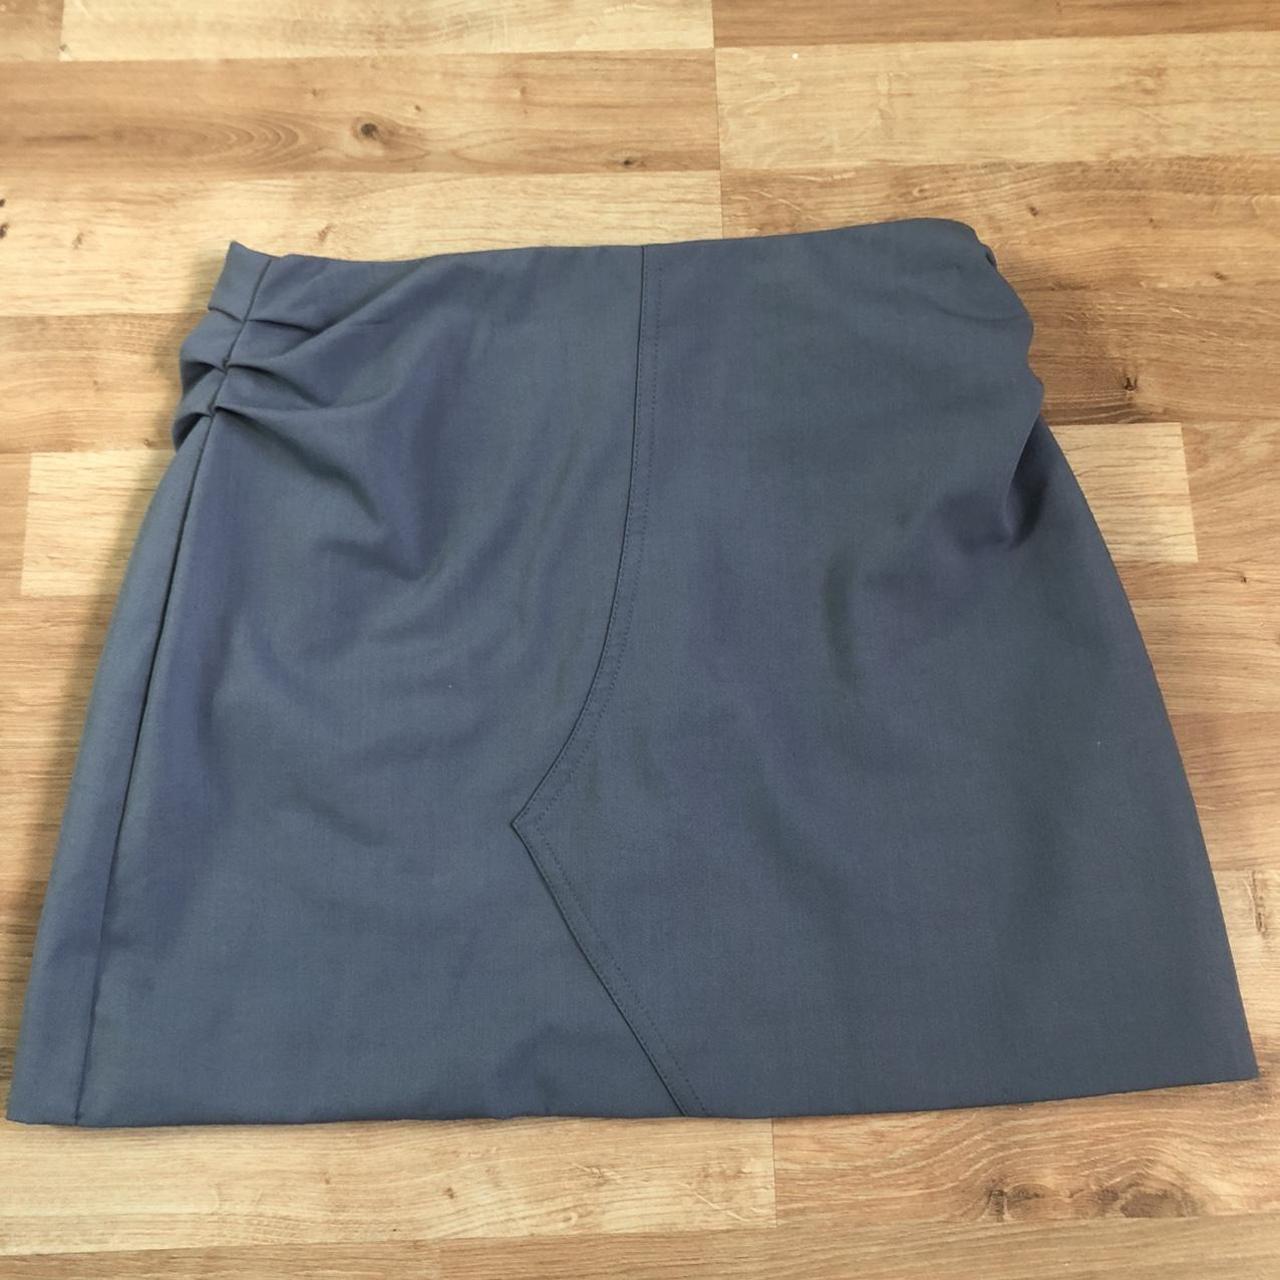 Pastel blue Zara skirt - mini skirt - has an... - Depop